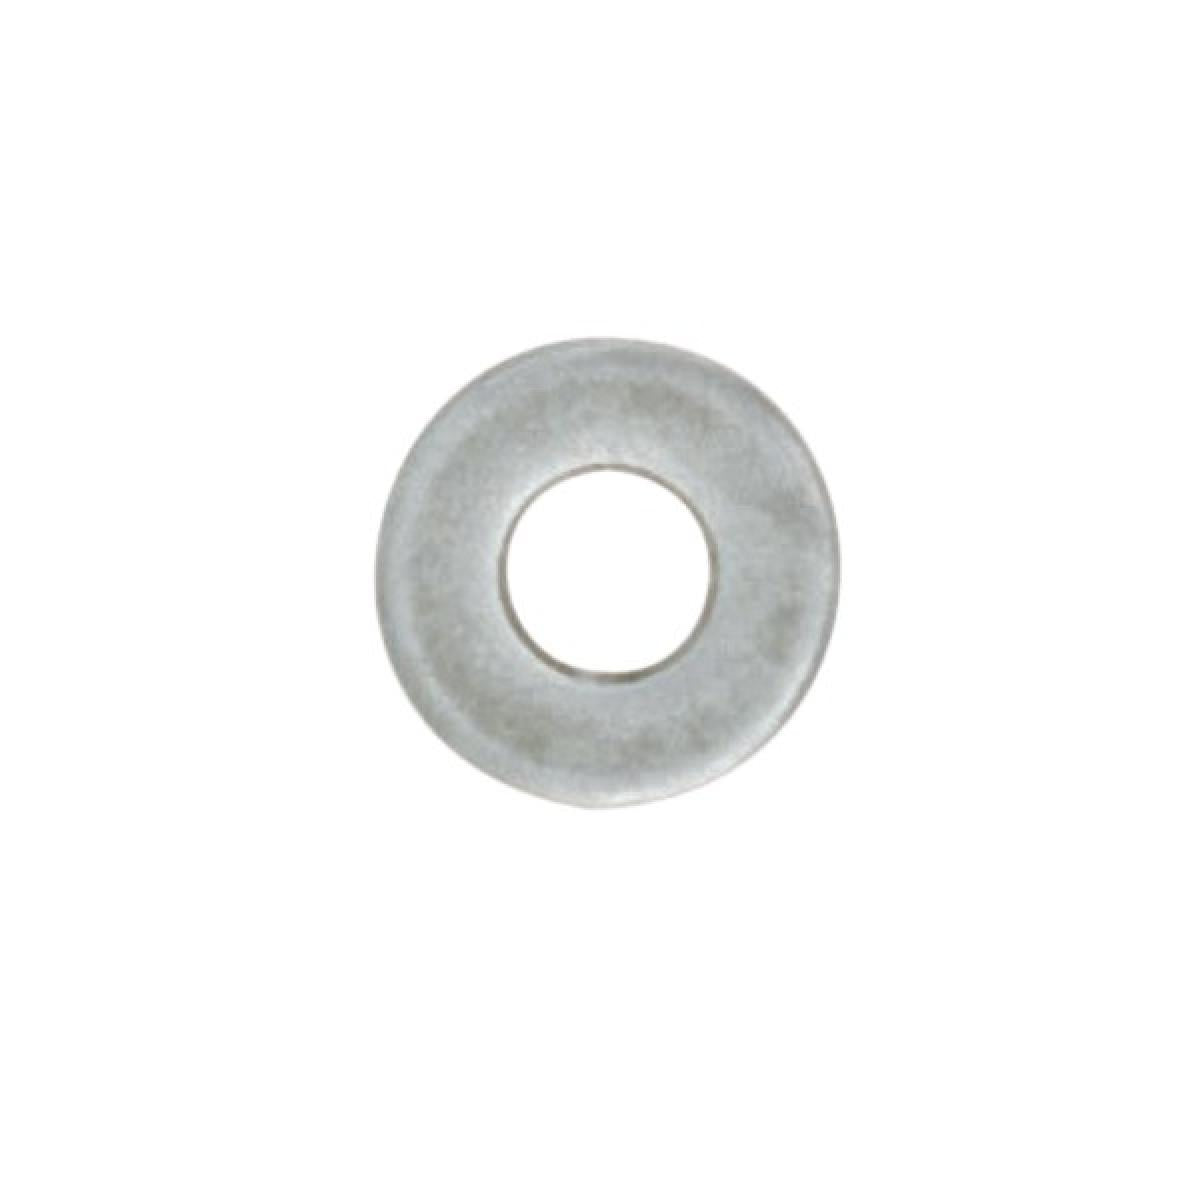 Satco 90-988 Steel Washer 1/8 IP Slip 18 Gauge Unfinished 1-1/4" Diameter